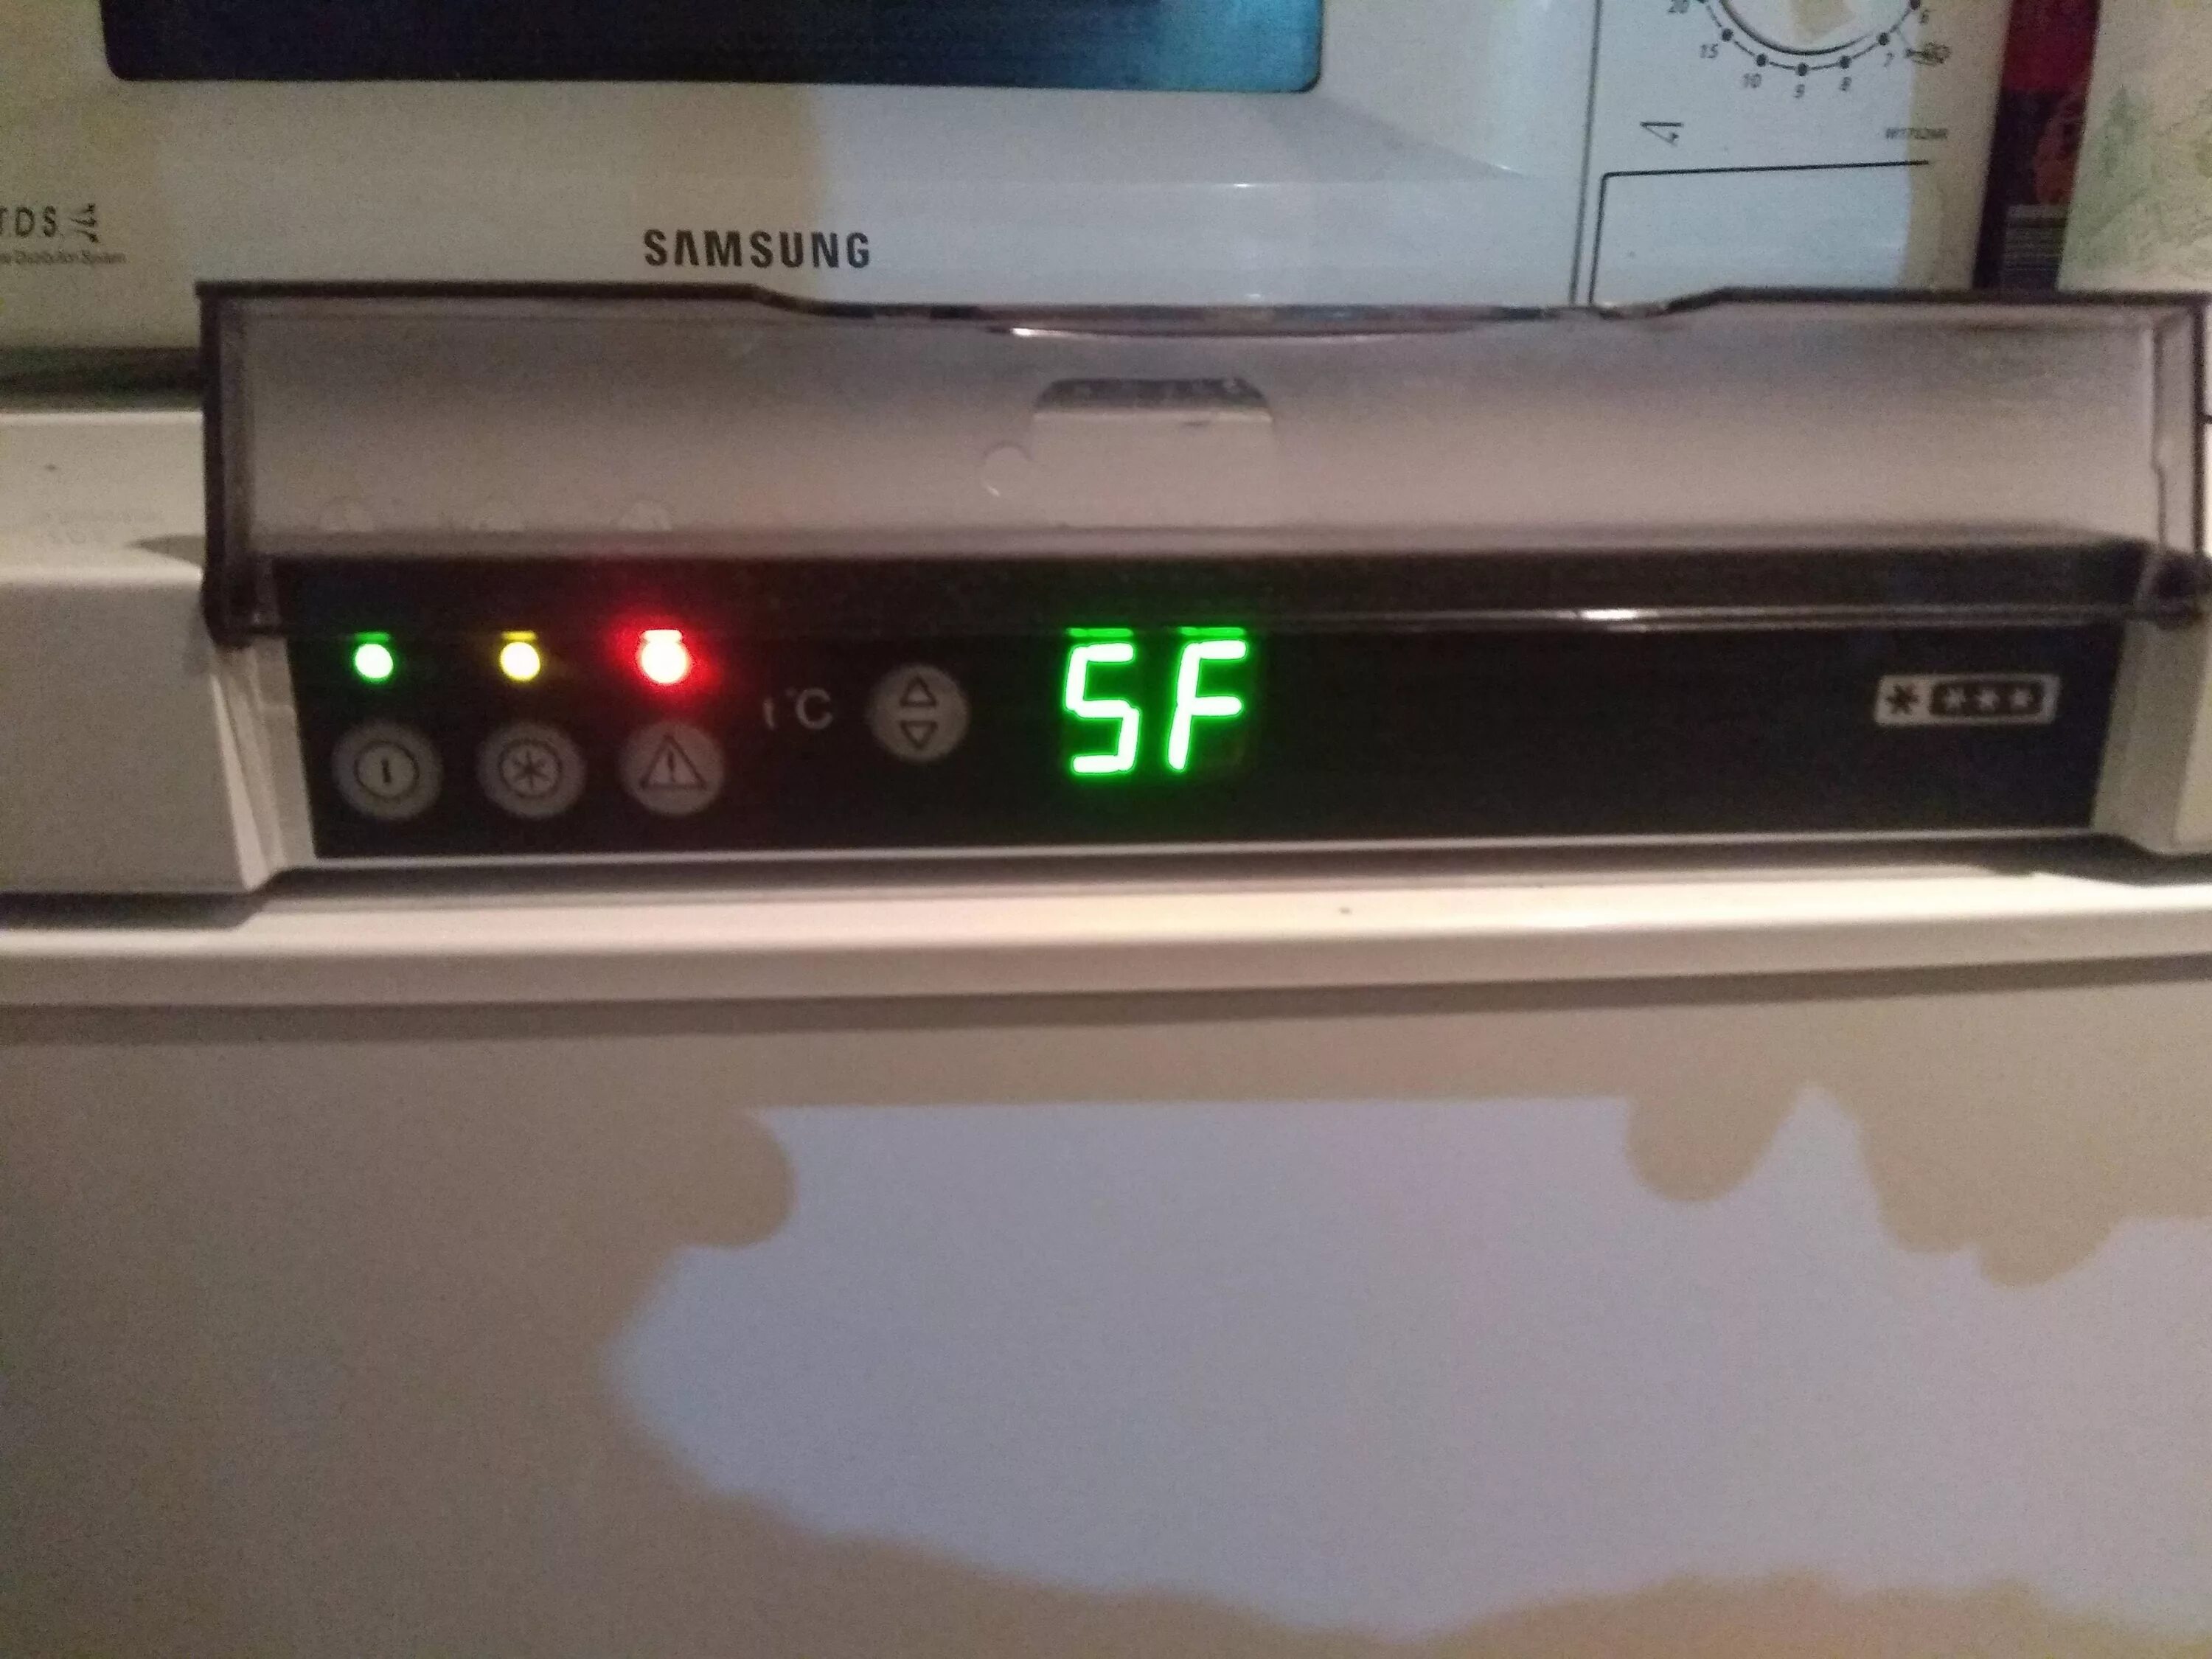 5f холодильник Атлант. F5 холодильник Атлант резистор. Холодильник Атлант двухкамерный ошибка 5f. Атлант холодильник ошибка f2. Холодильник атлант двухкамерный горит внимание